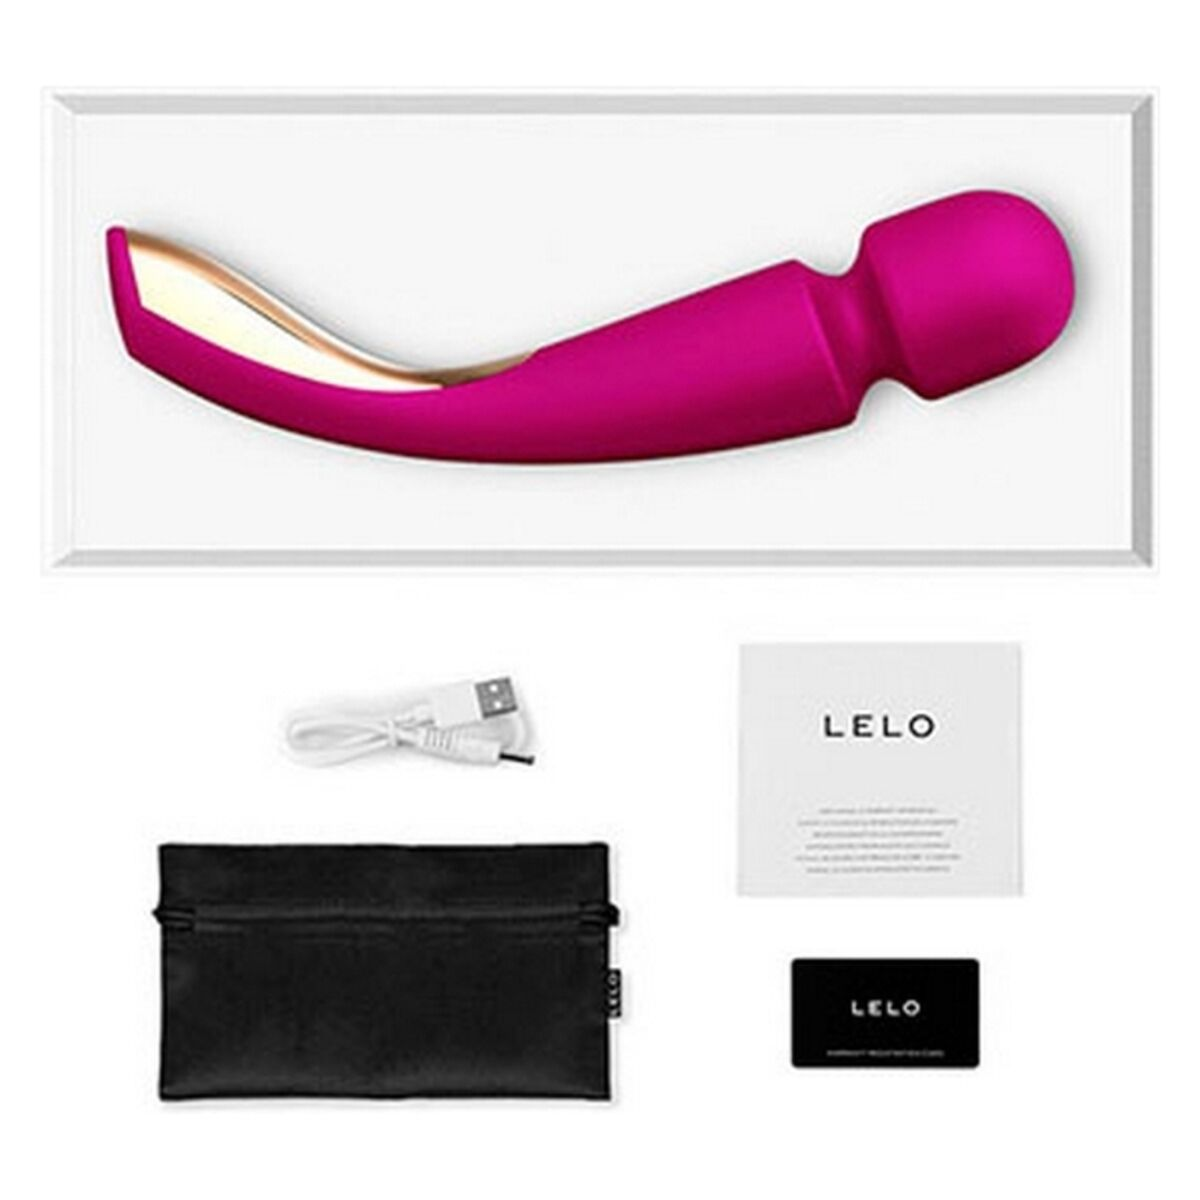 LELO Wand LELO - Pink Groß 2 Smart wand-massager -